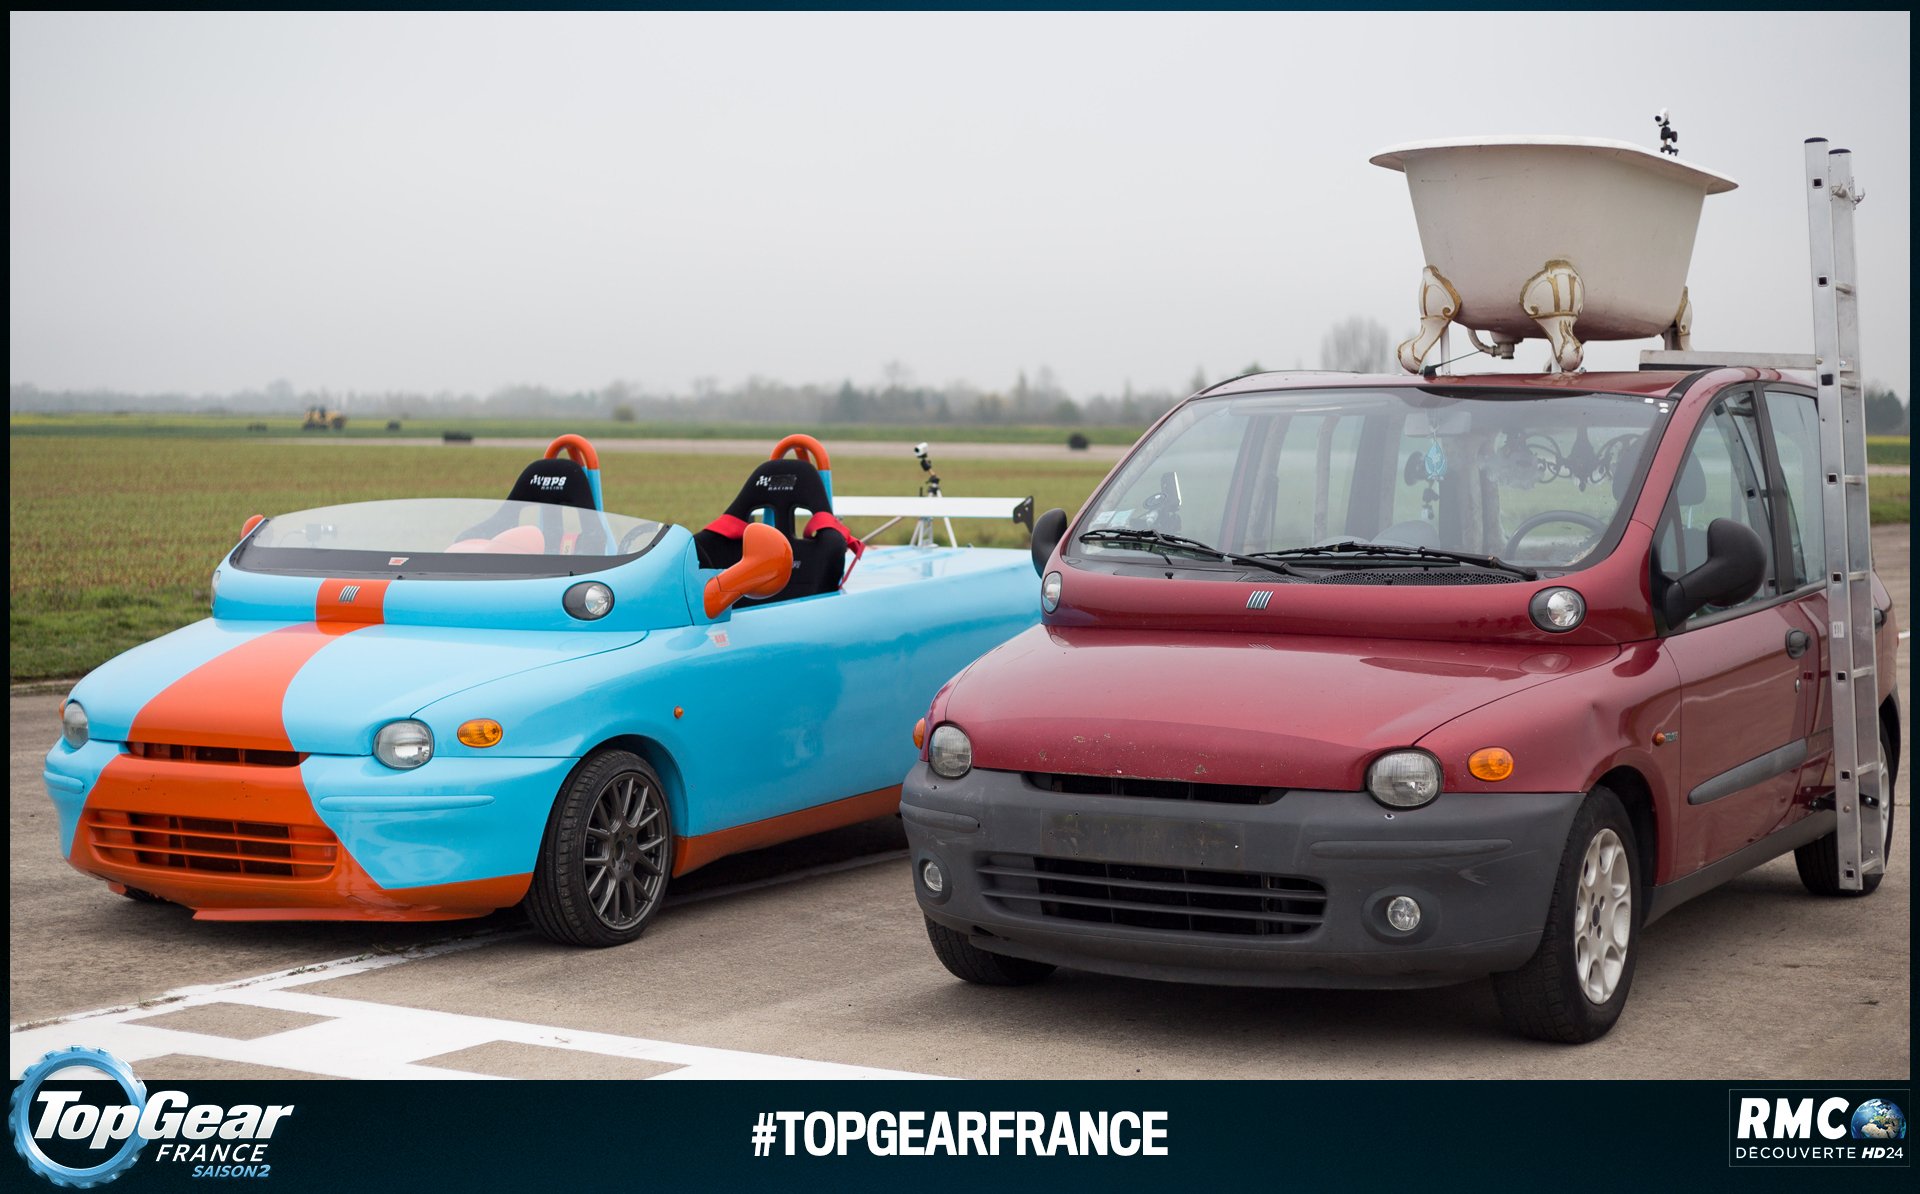 \ Top Gear France تويتر: "#SiJavaisUnePunto je lui réserverais le même sort que @FiatFr Multipla Mercredi #TopGearFrance #RMCDécouverte https://t.co/92fQZY17hT"